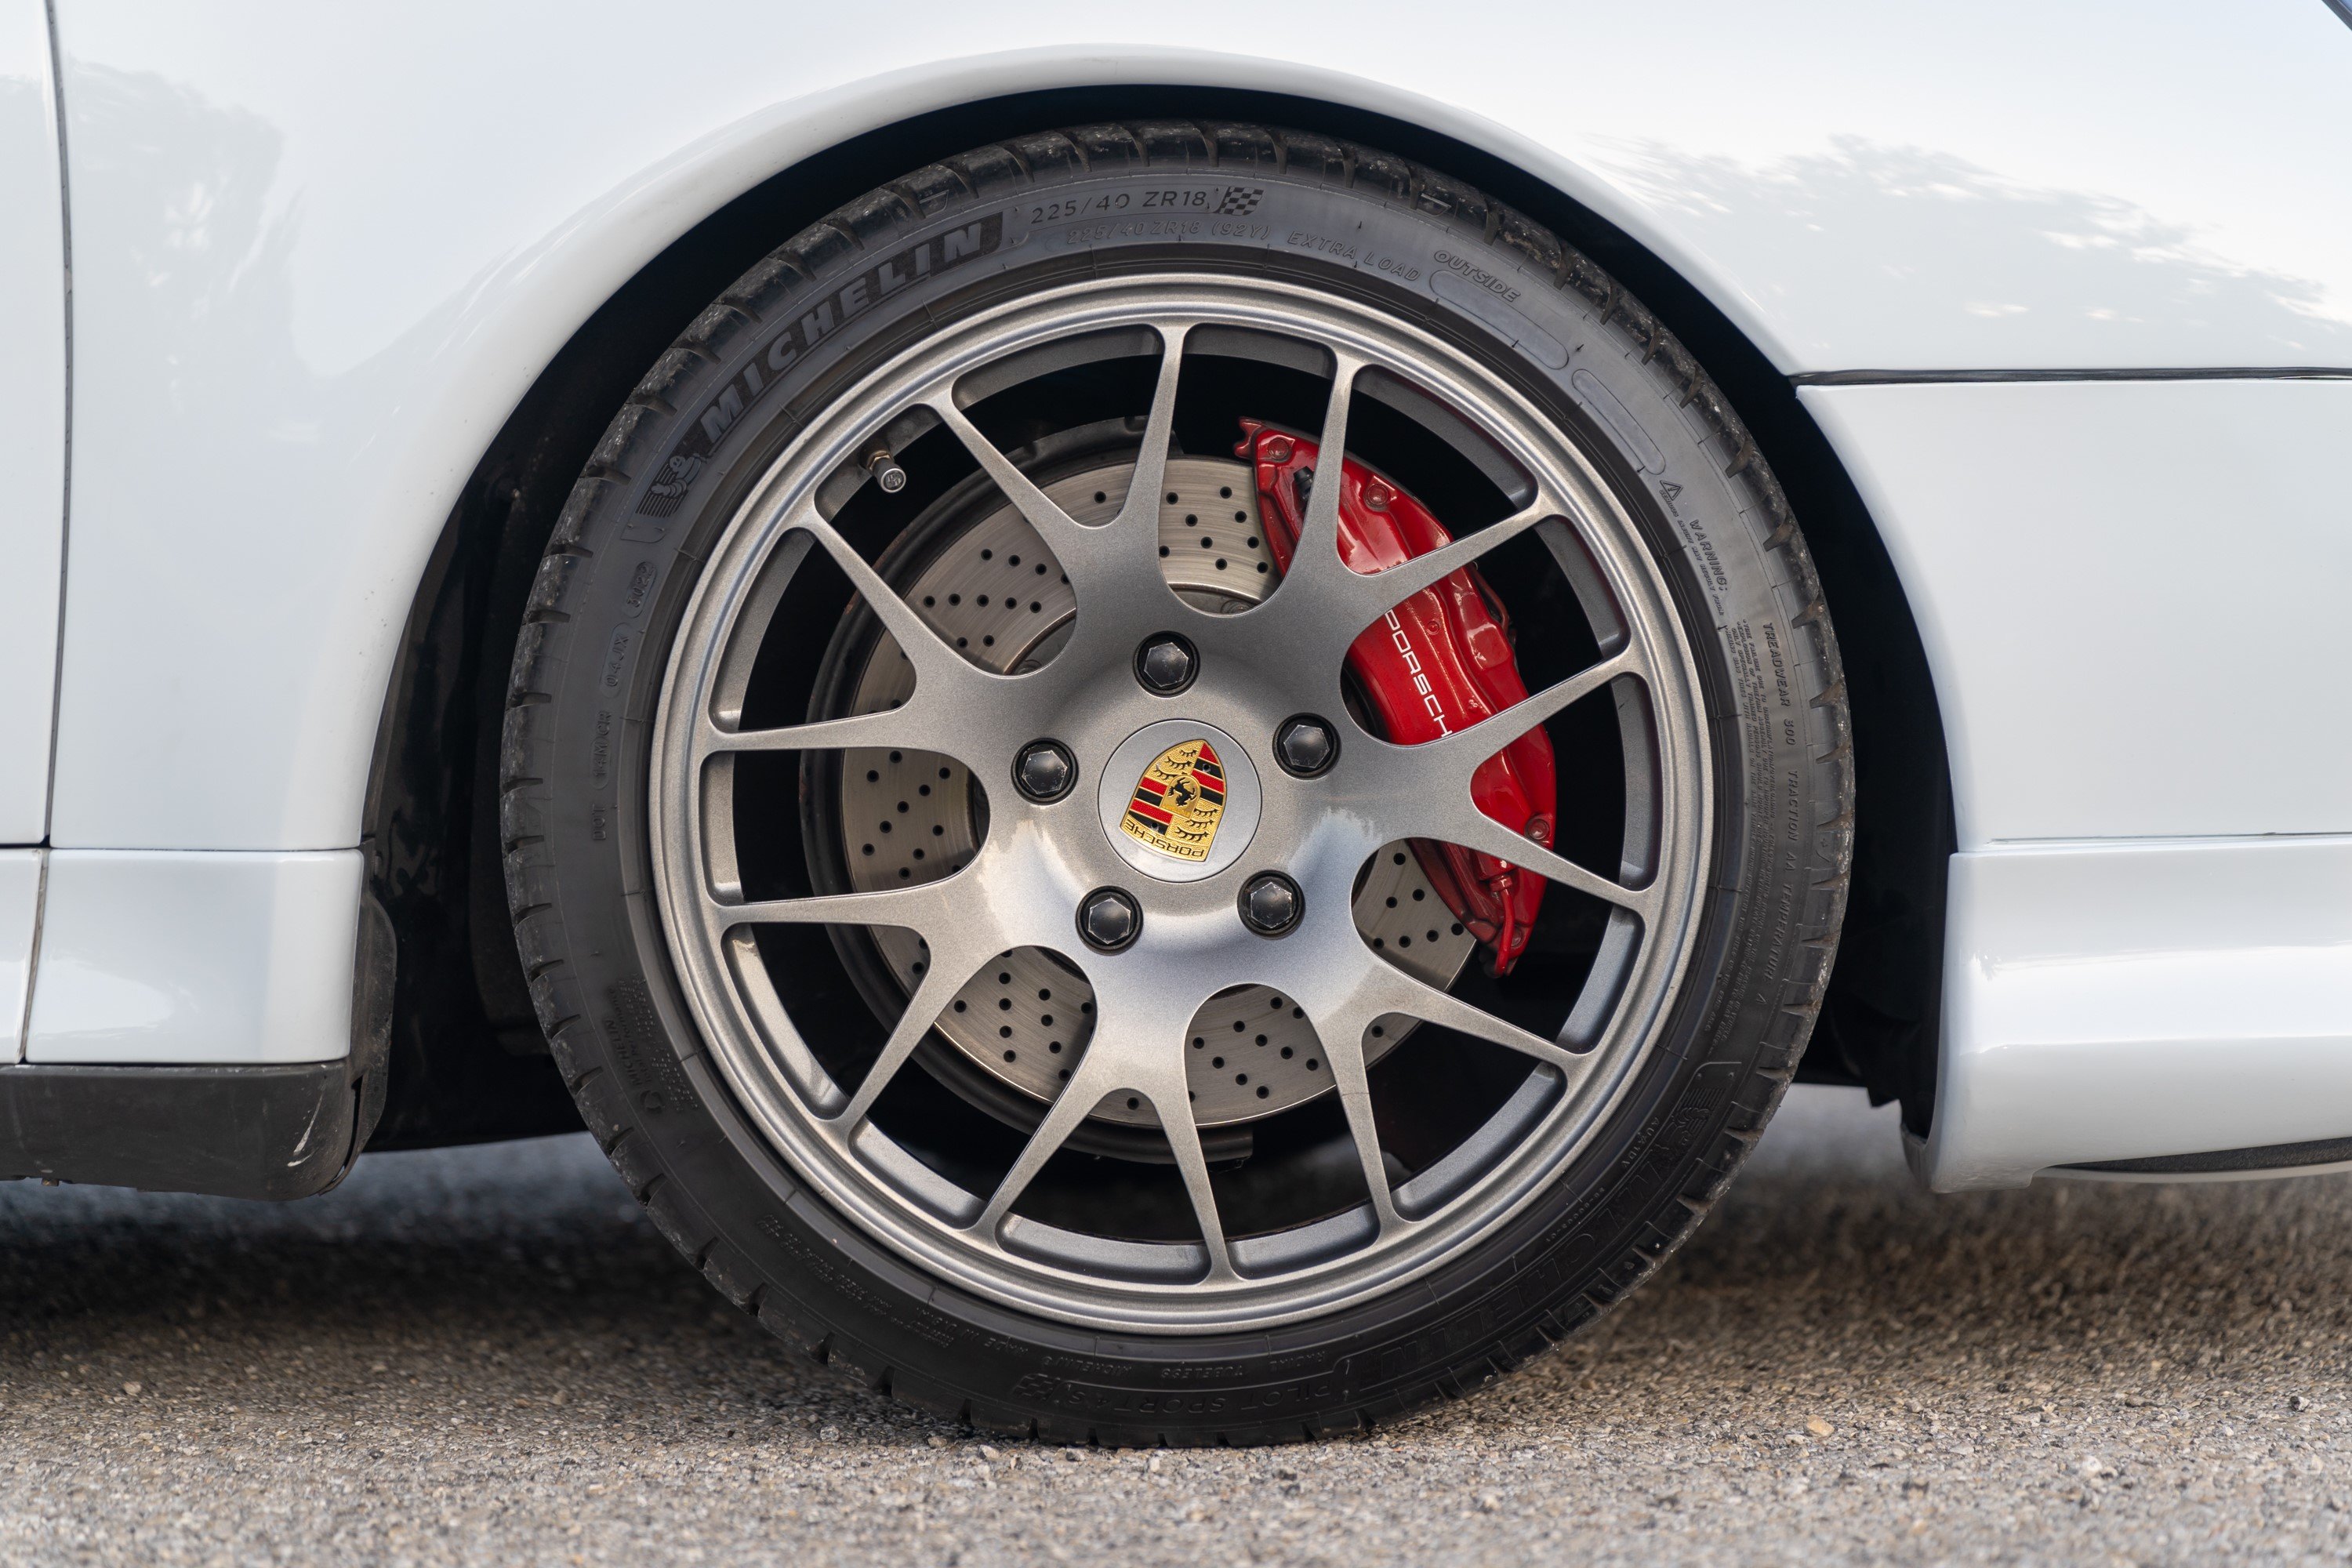 Aftermarket gunmetal wheels on a Porsche 993